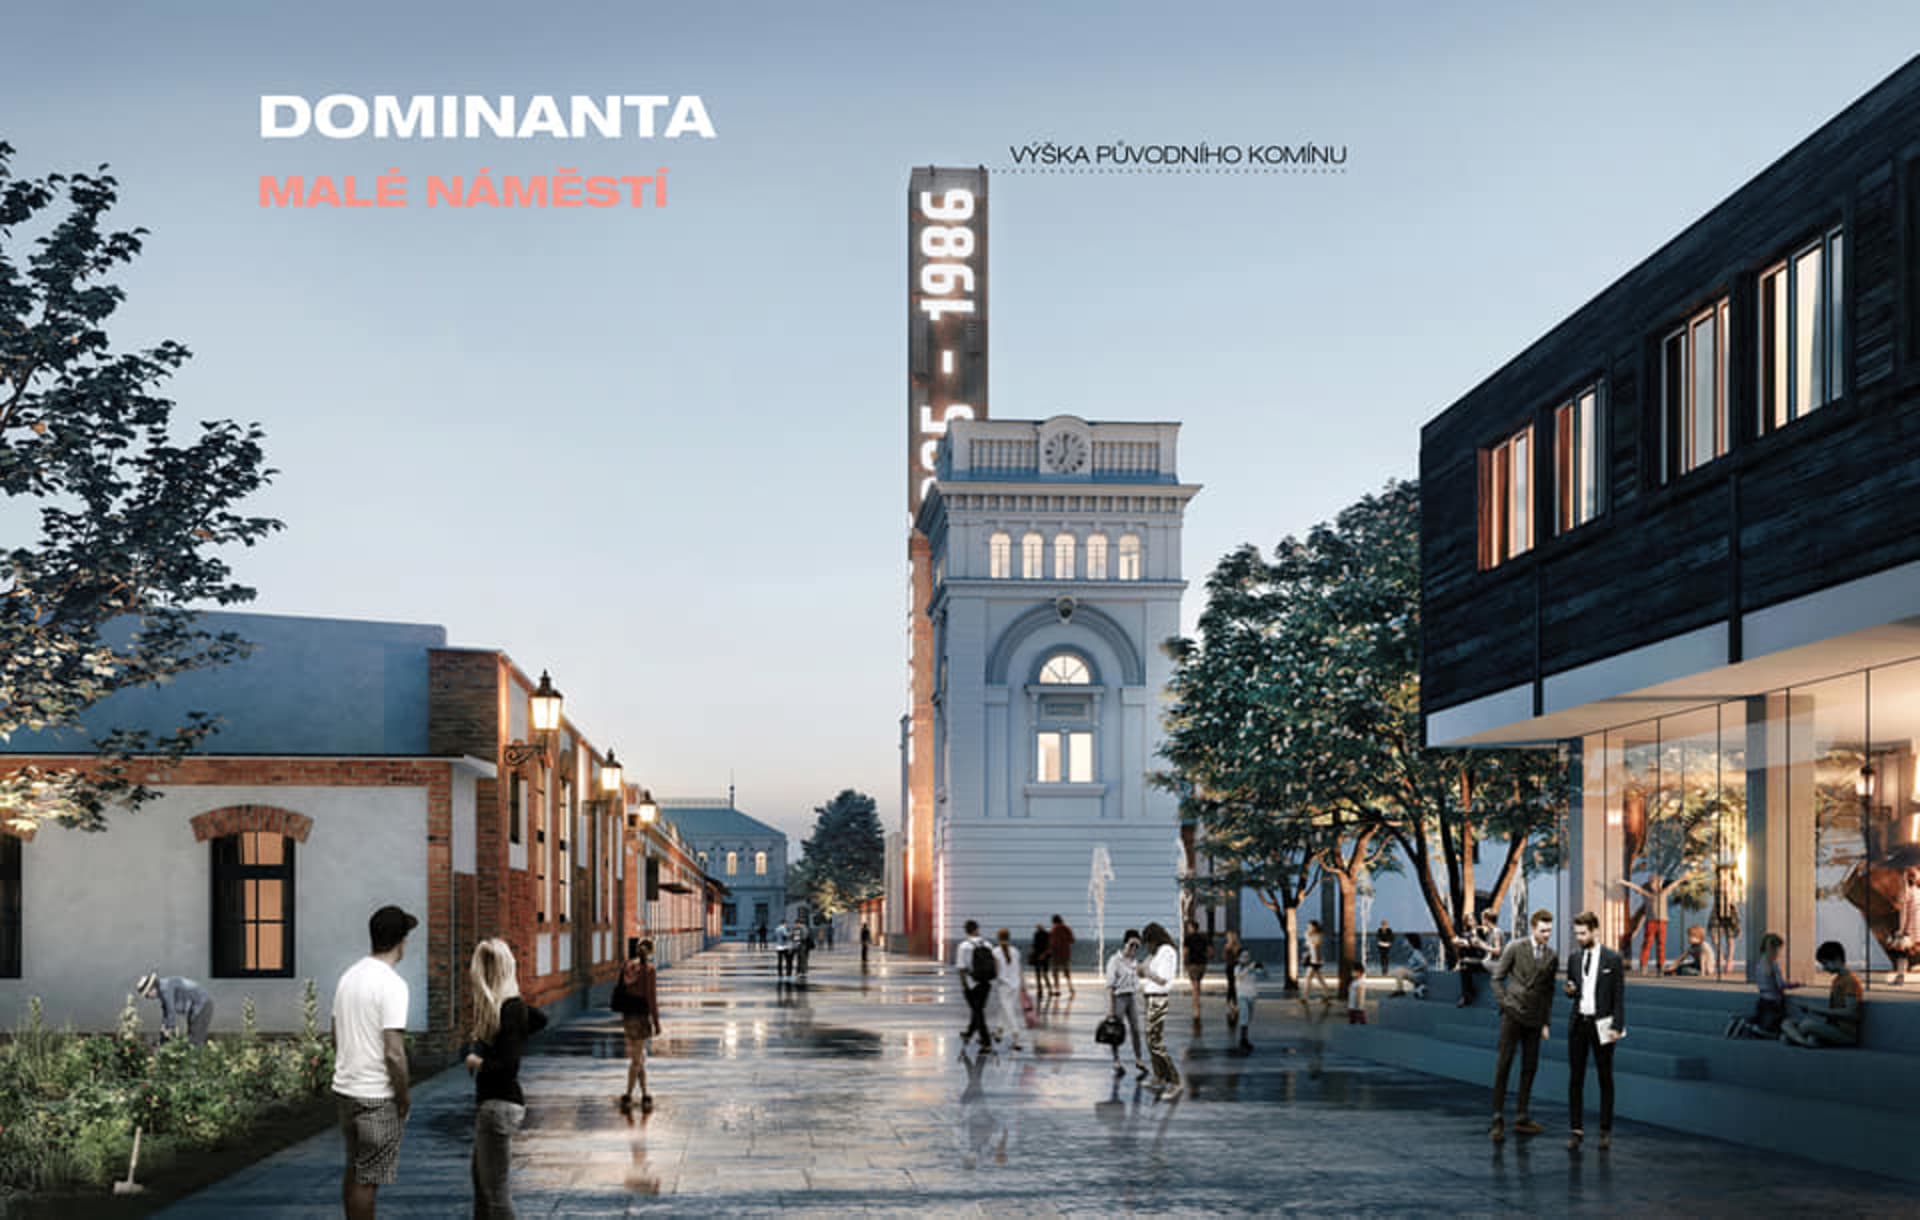 Pražská tržnice se má změnit v kulturní centrum: Dominanta – malé náměstí